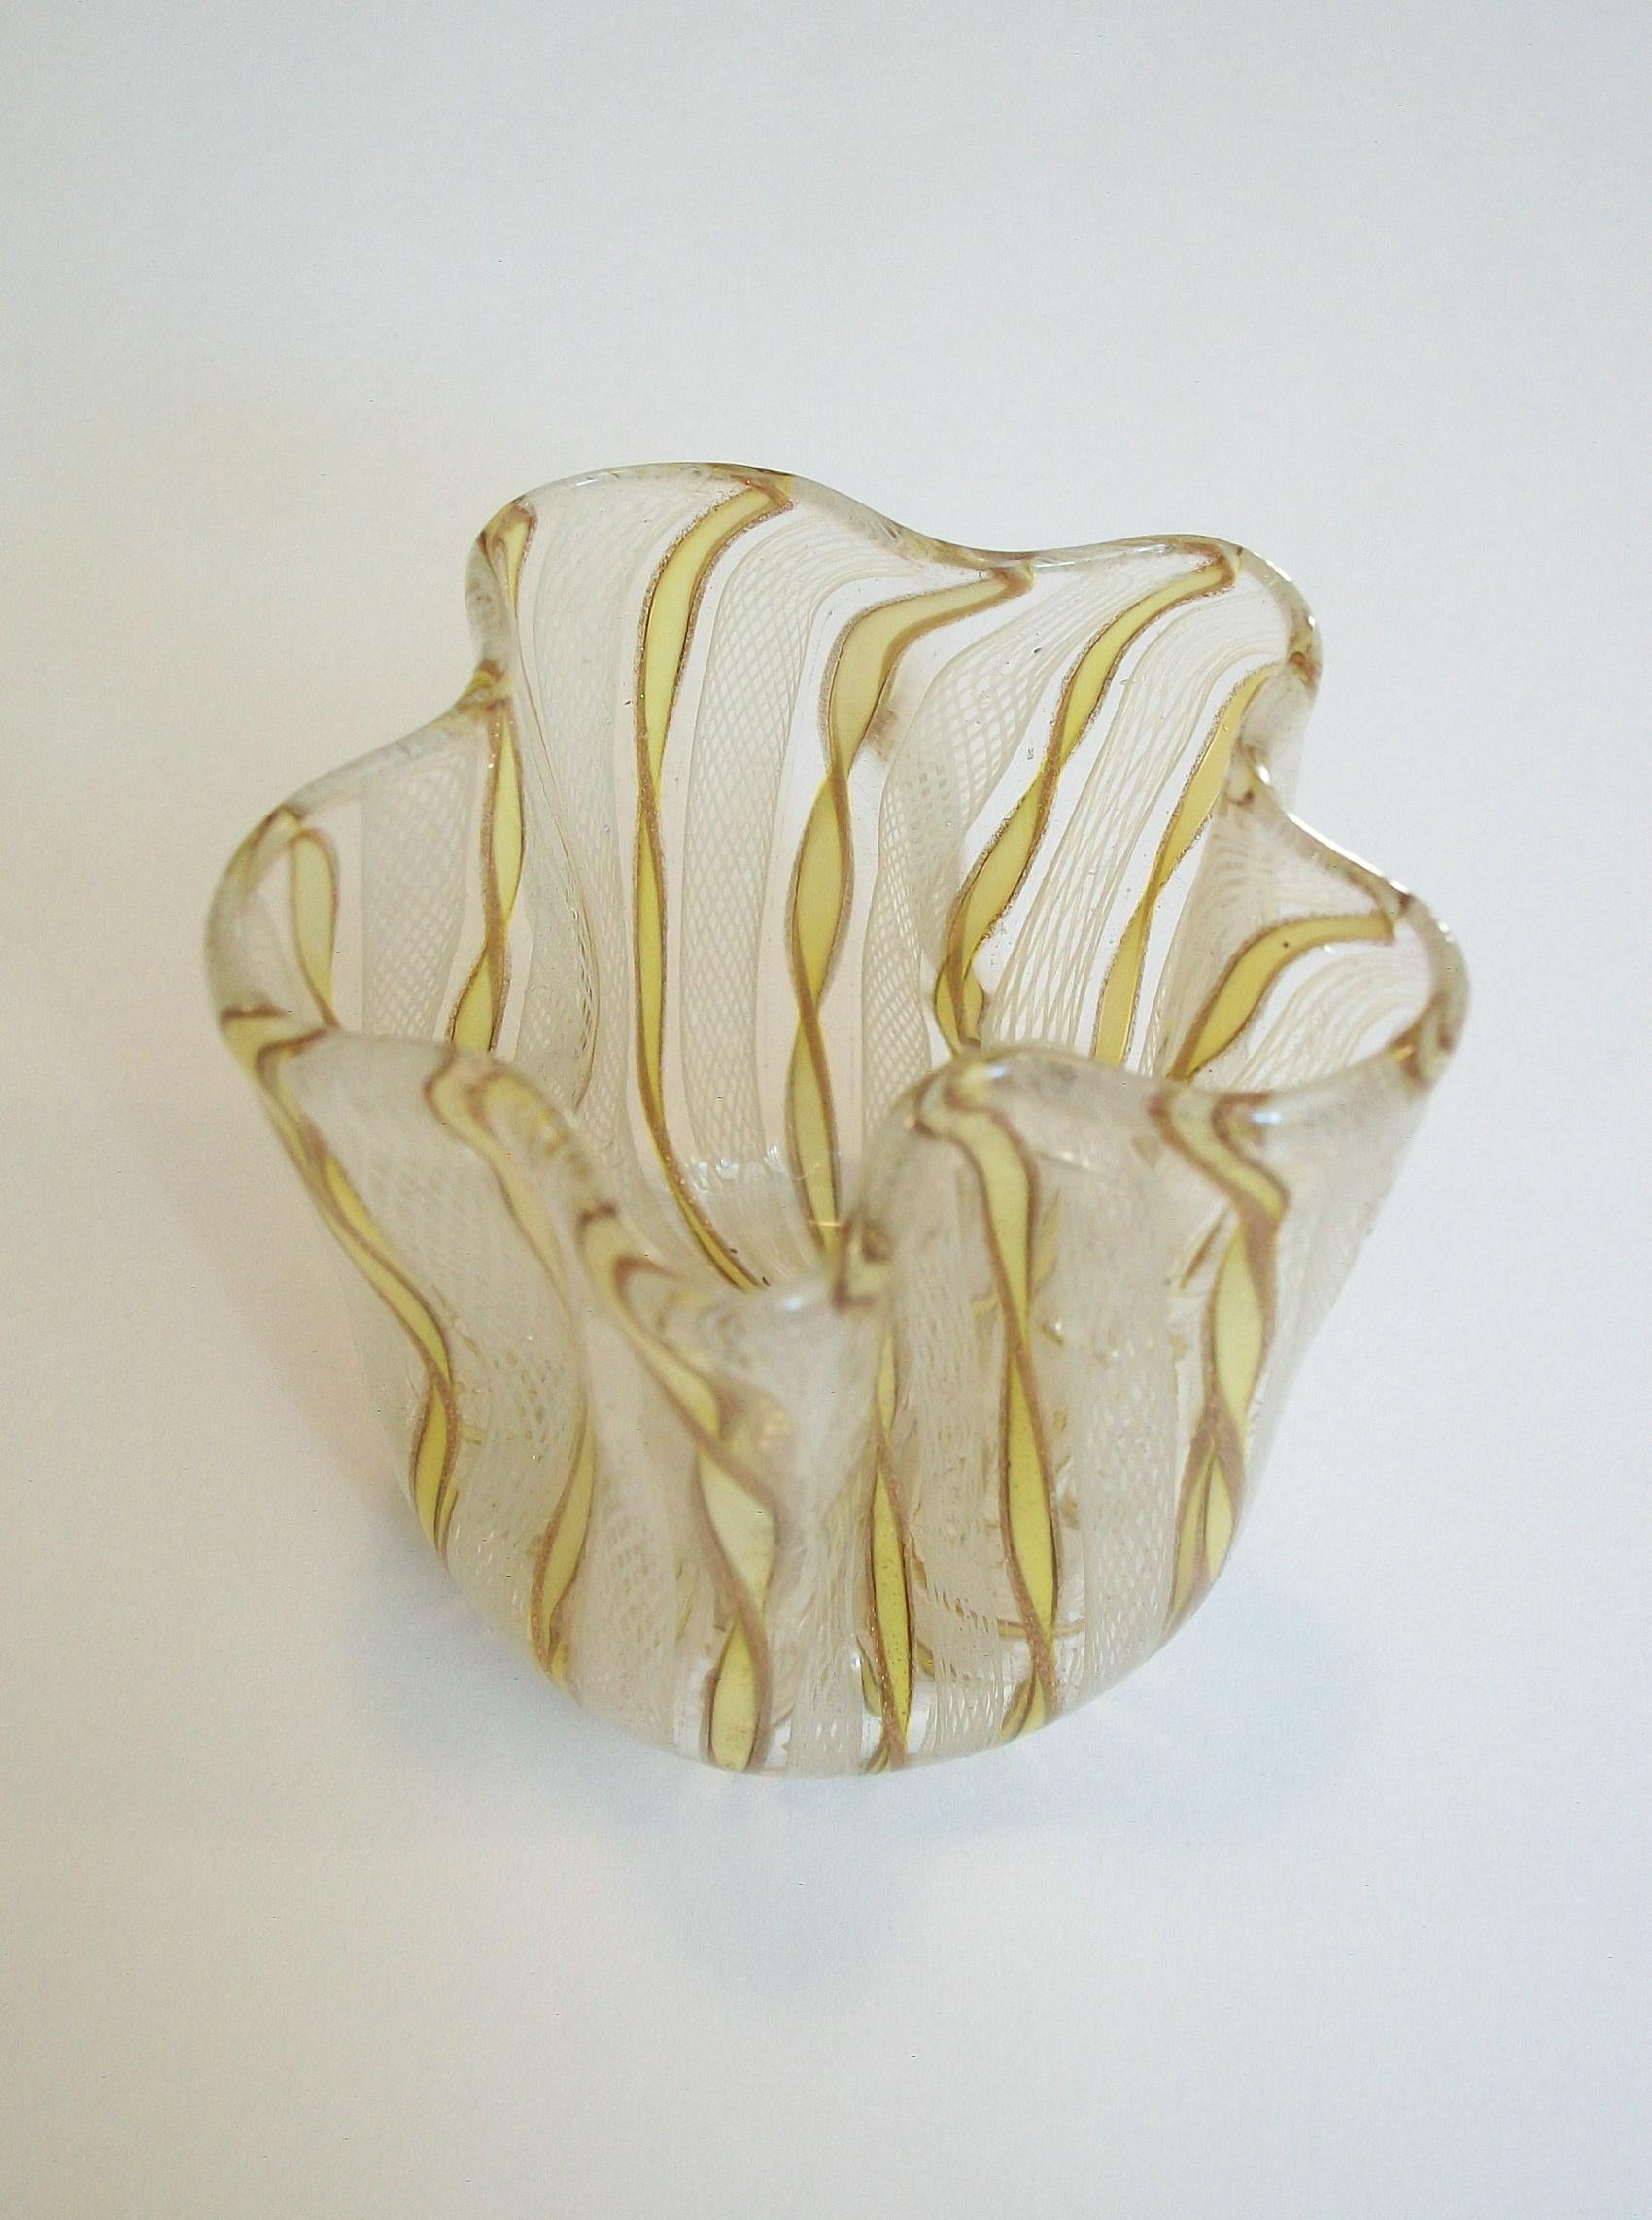 Taschentuchglasvase aus der Mitte des Jahrhunderts - gedrehte gelbe Canes mit kupferfarbenem Aventurin und weißem Latticino - seltene kleine Größe - glatt polierter Sockel - unsigniert - Italien - um 1960er Jahre.

Ausgezeichneter/fast neuwertiger